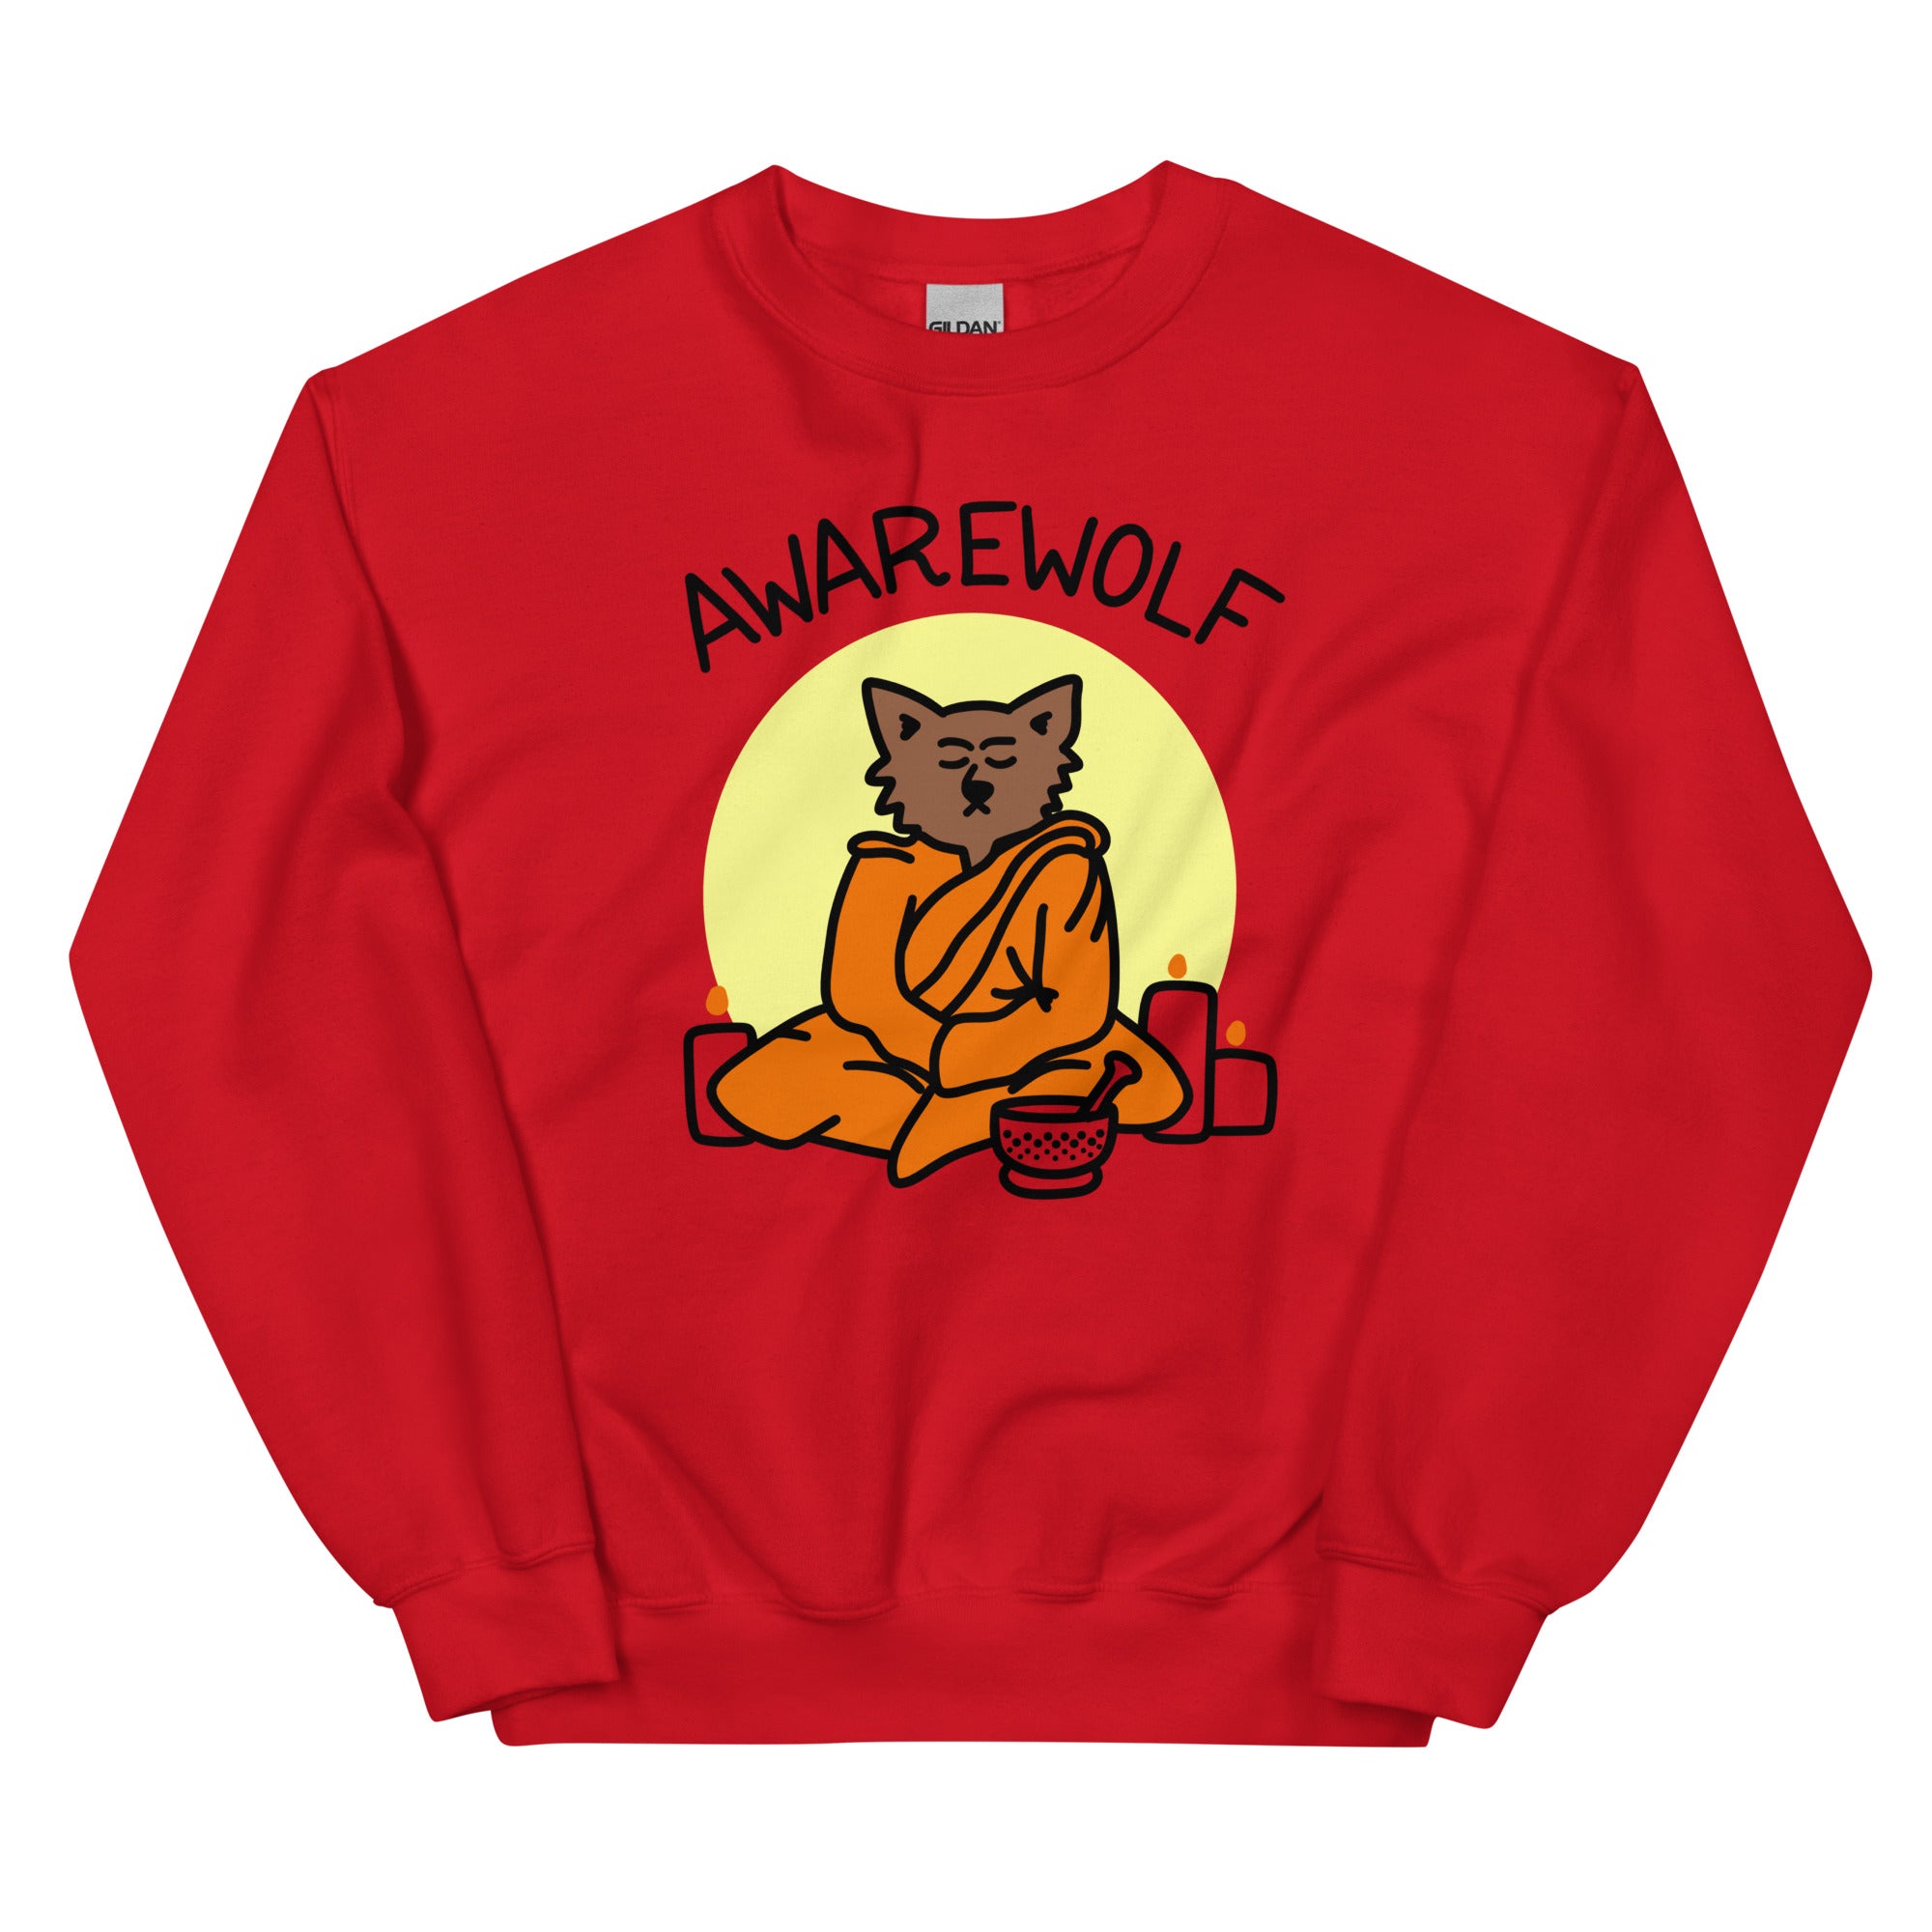 Full moon yoga sweatshirt, awarewolf sweatshirt for yoga teacher, funny meditation sweatshirt